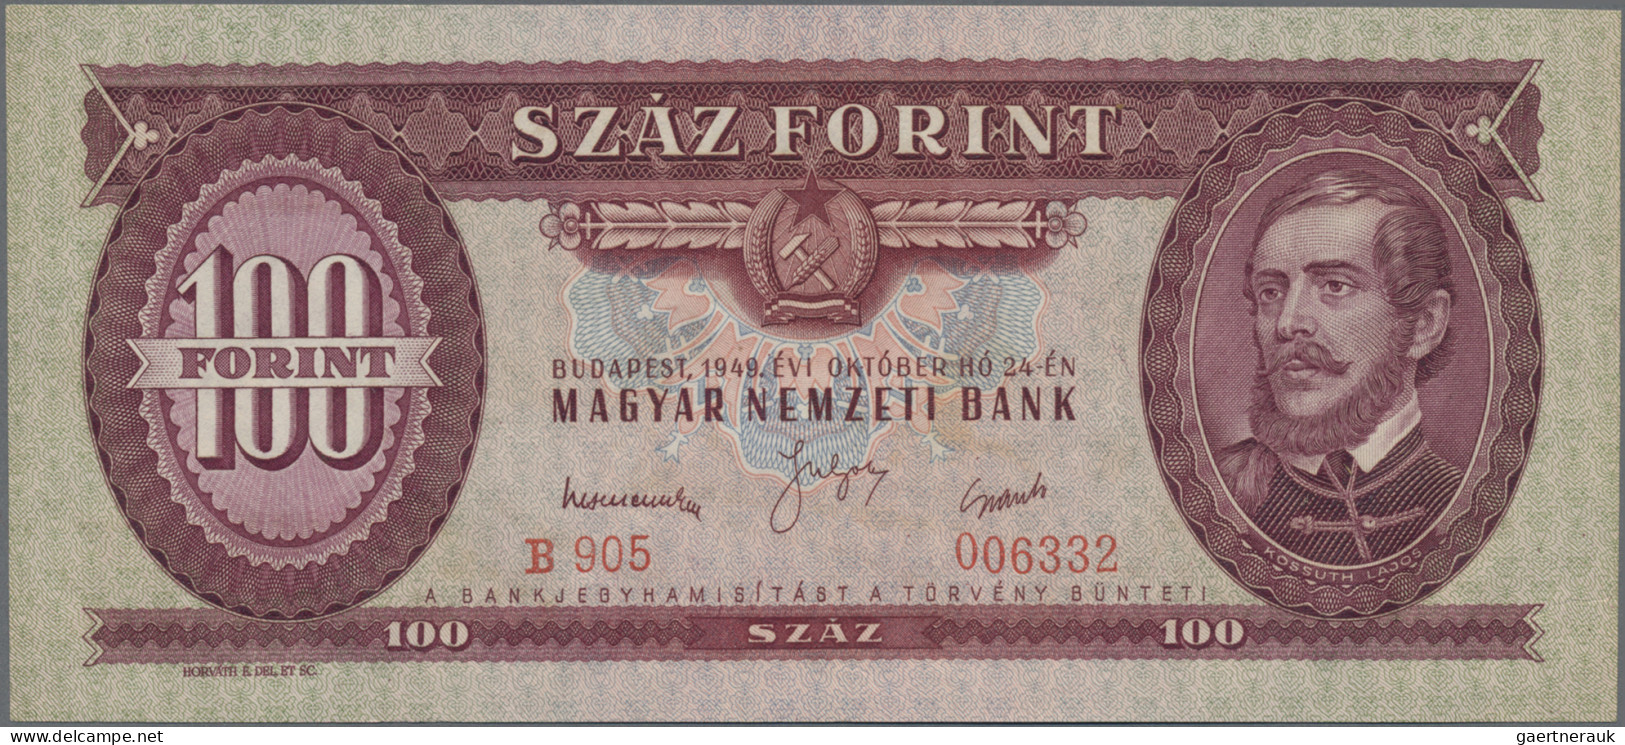 Hungary: Magyar Nemzeti Bank: Rare Set Of The 1949 Series With 10, 20 And 100 Fo - Hungary